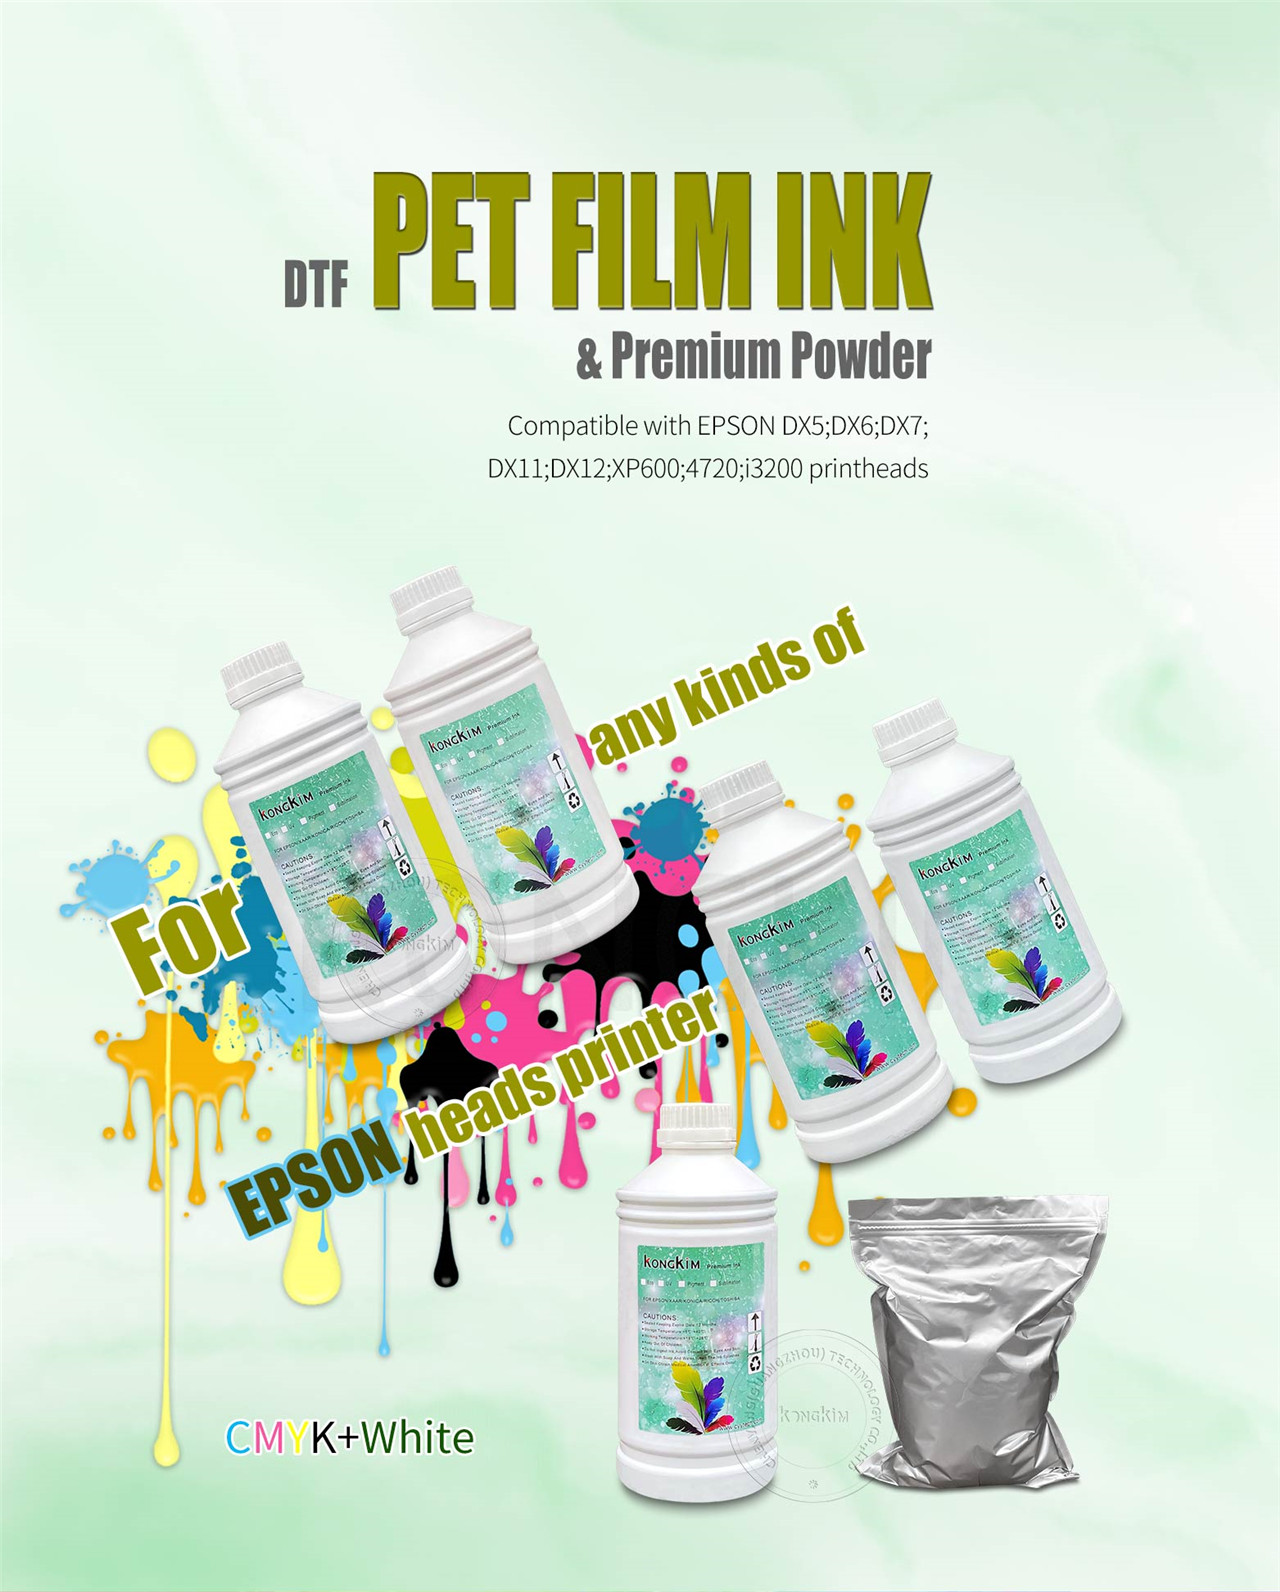 सभी डीटीएफ प्रिंटरों के लिए डीटीएफ स्याही सीएमवाईके सफेद रंग और डीटीएफ पावर और डीटीएफ पीईटी फिल्म-05